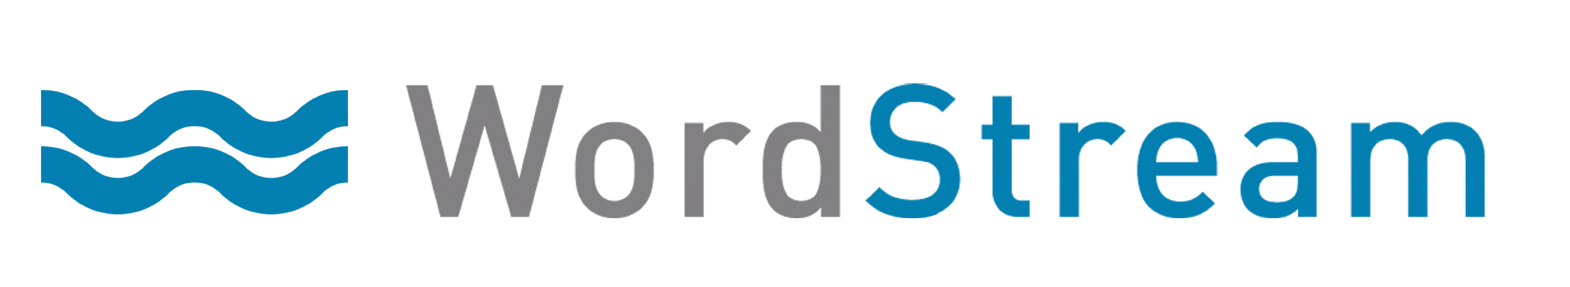 WordStream Logo photo - 1